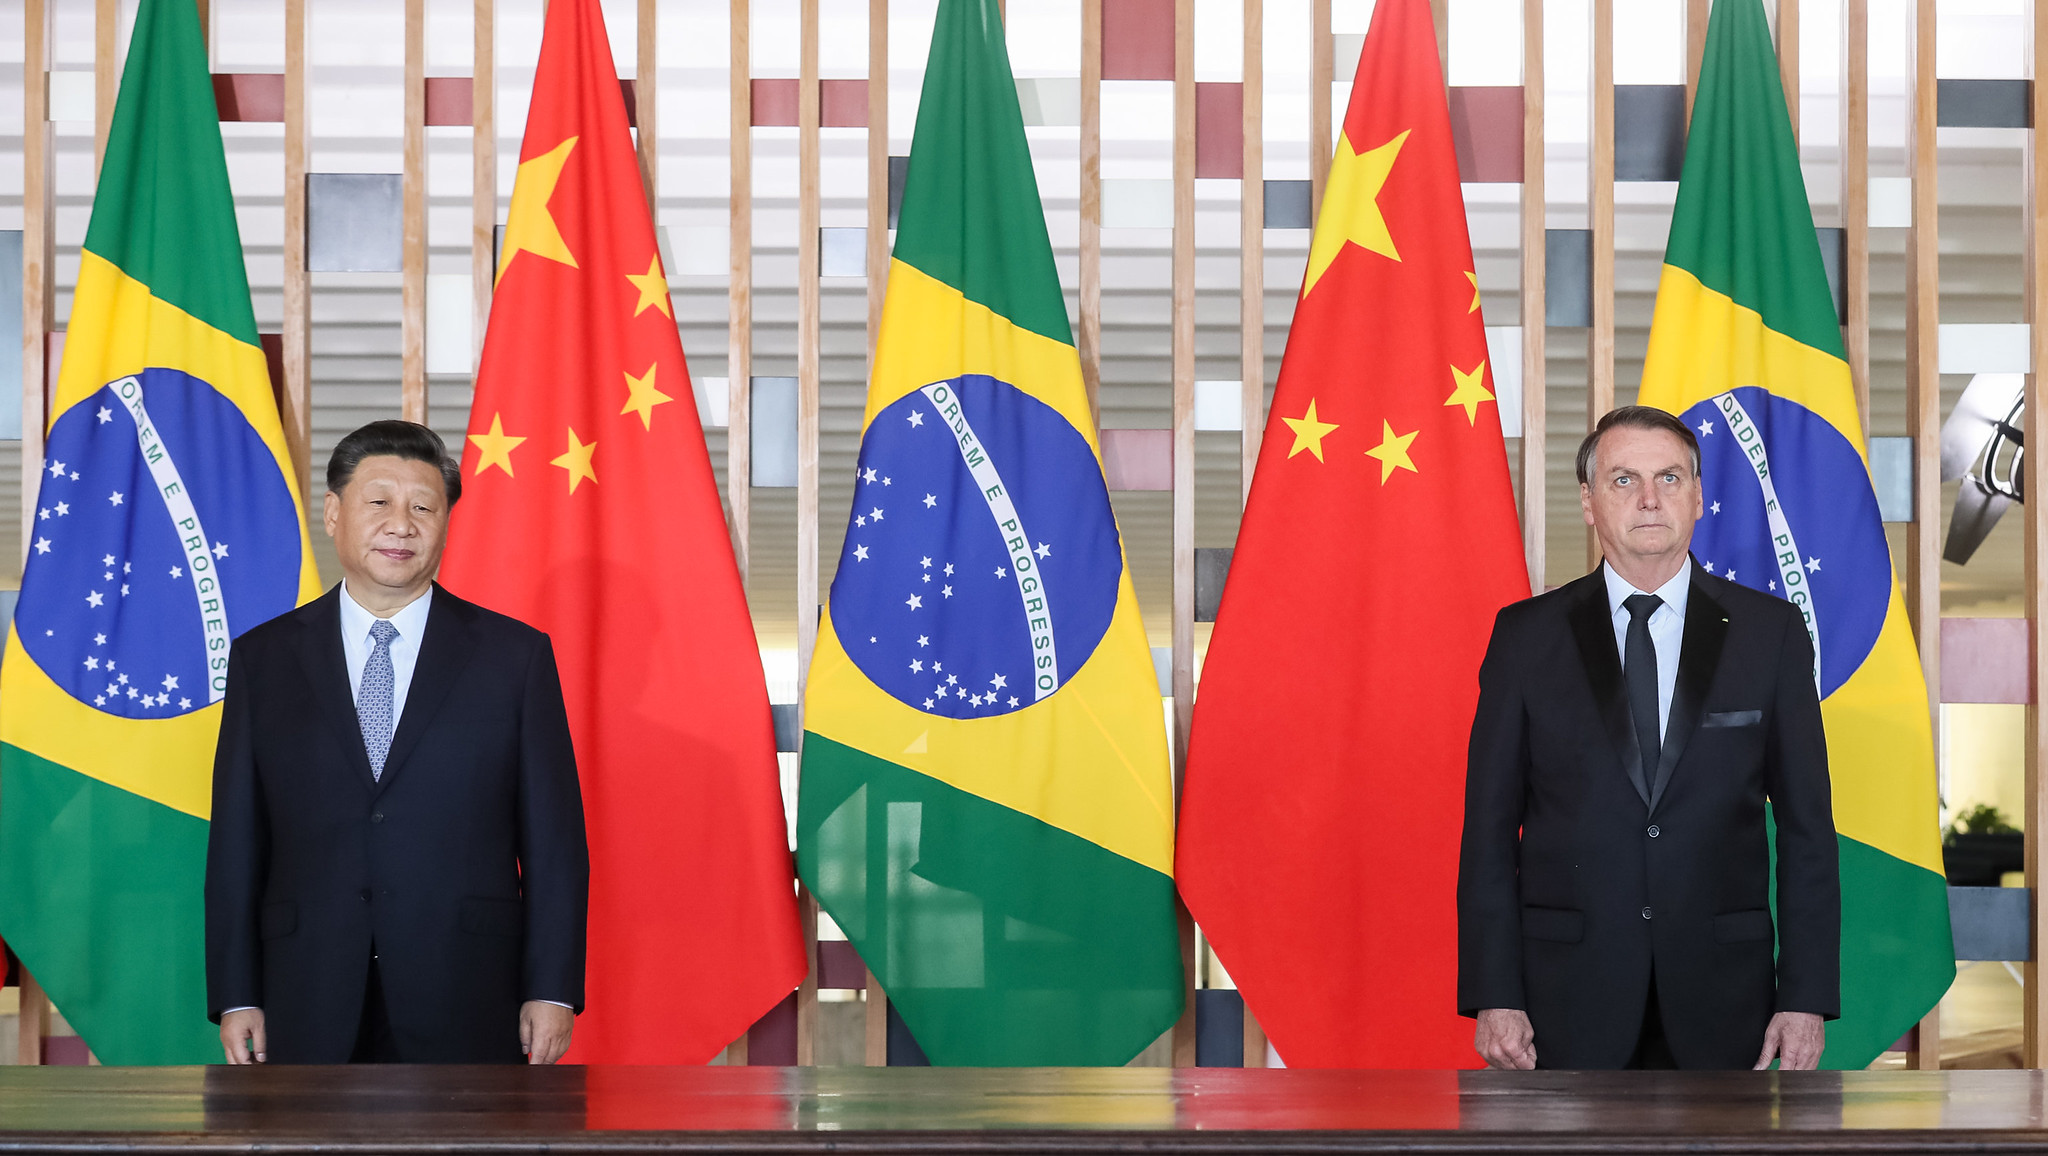 <p>Los presidentes Xi y Bolsonaro durante momentos más felices en la 11ª Cumbre BRICS en Brasilia, antes de que un tweet del hijo del líder brasileño sobre el coronavirus causara una disputa diplomática (imagen: Isac Nóbrega / PR)</p>